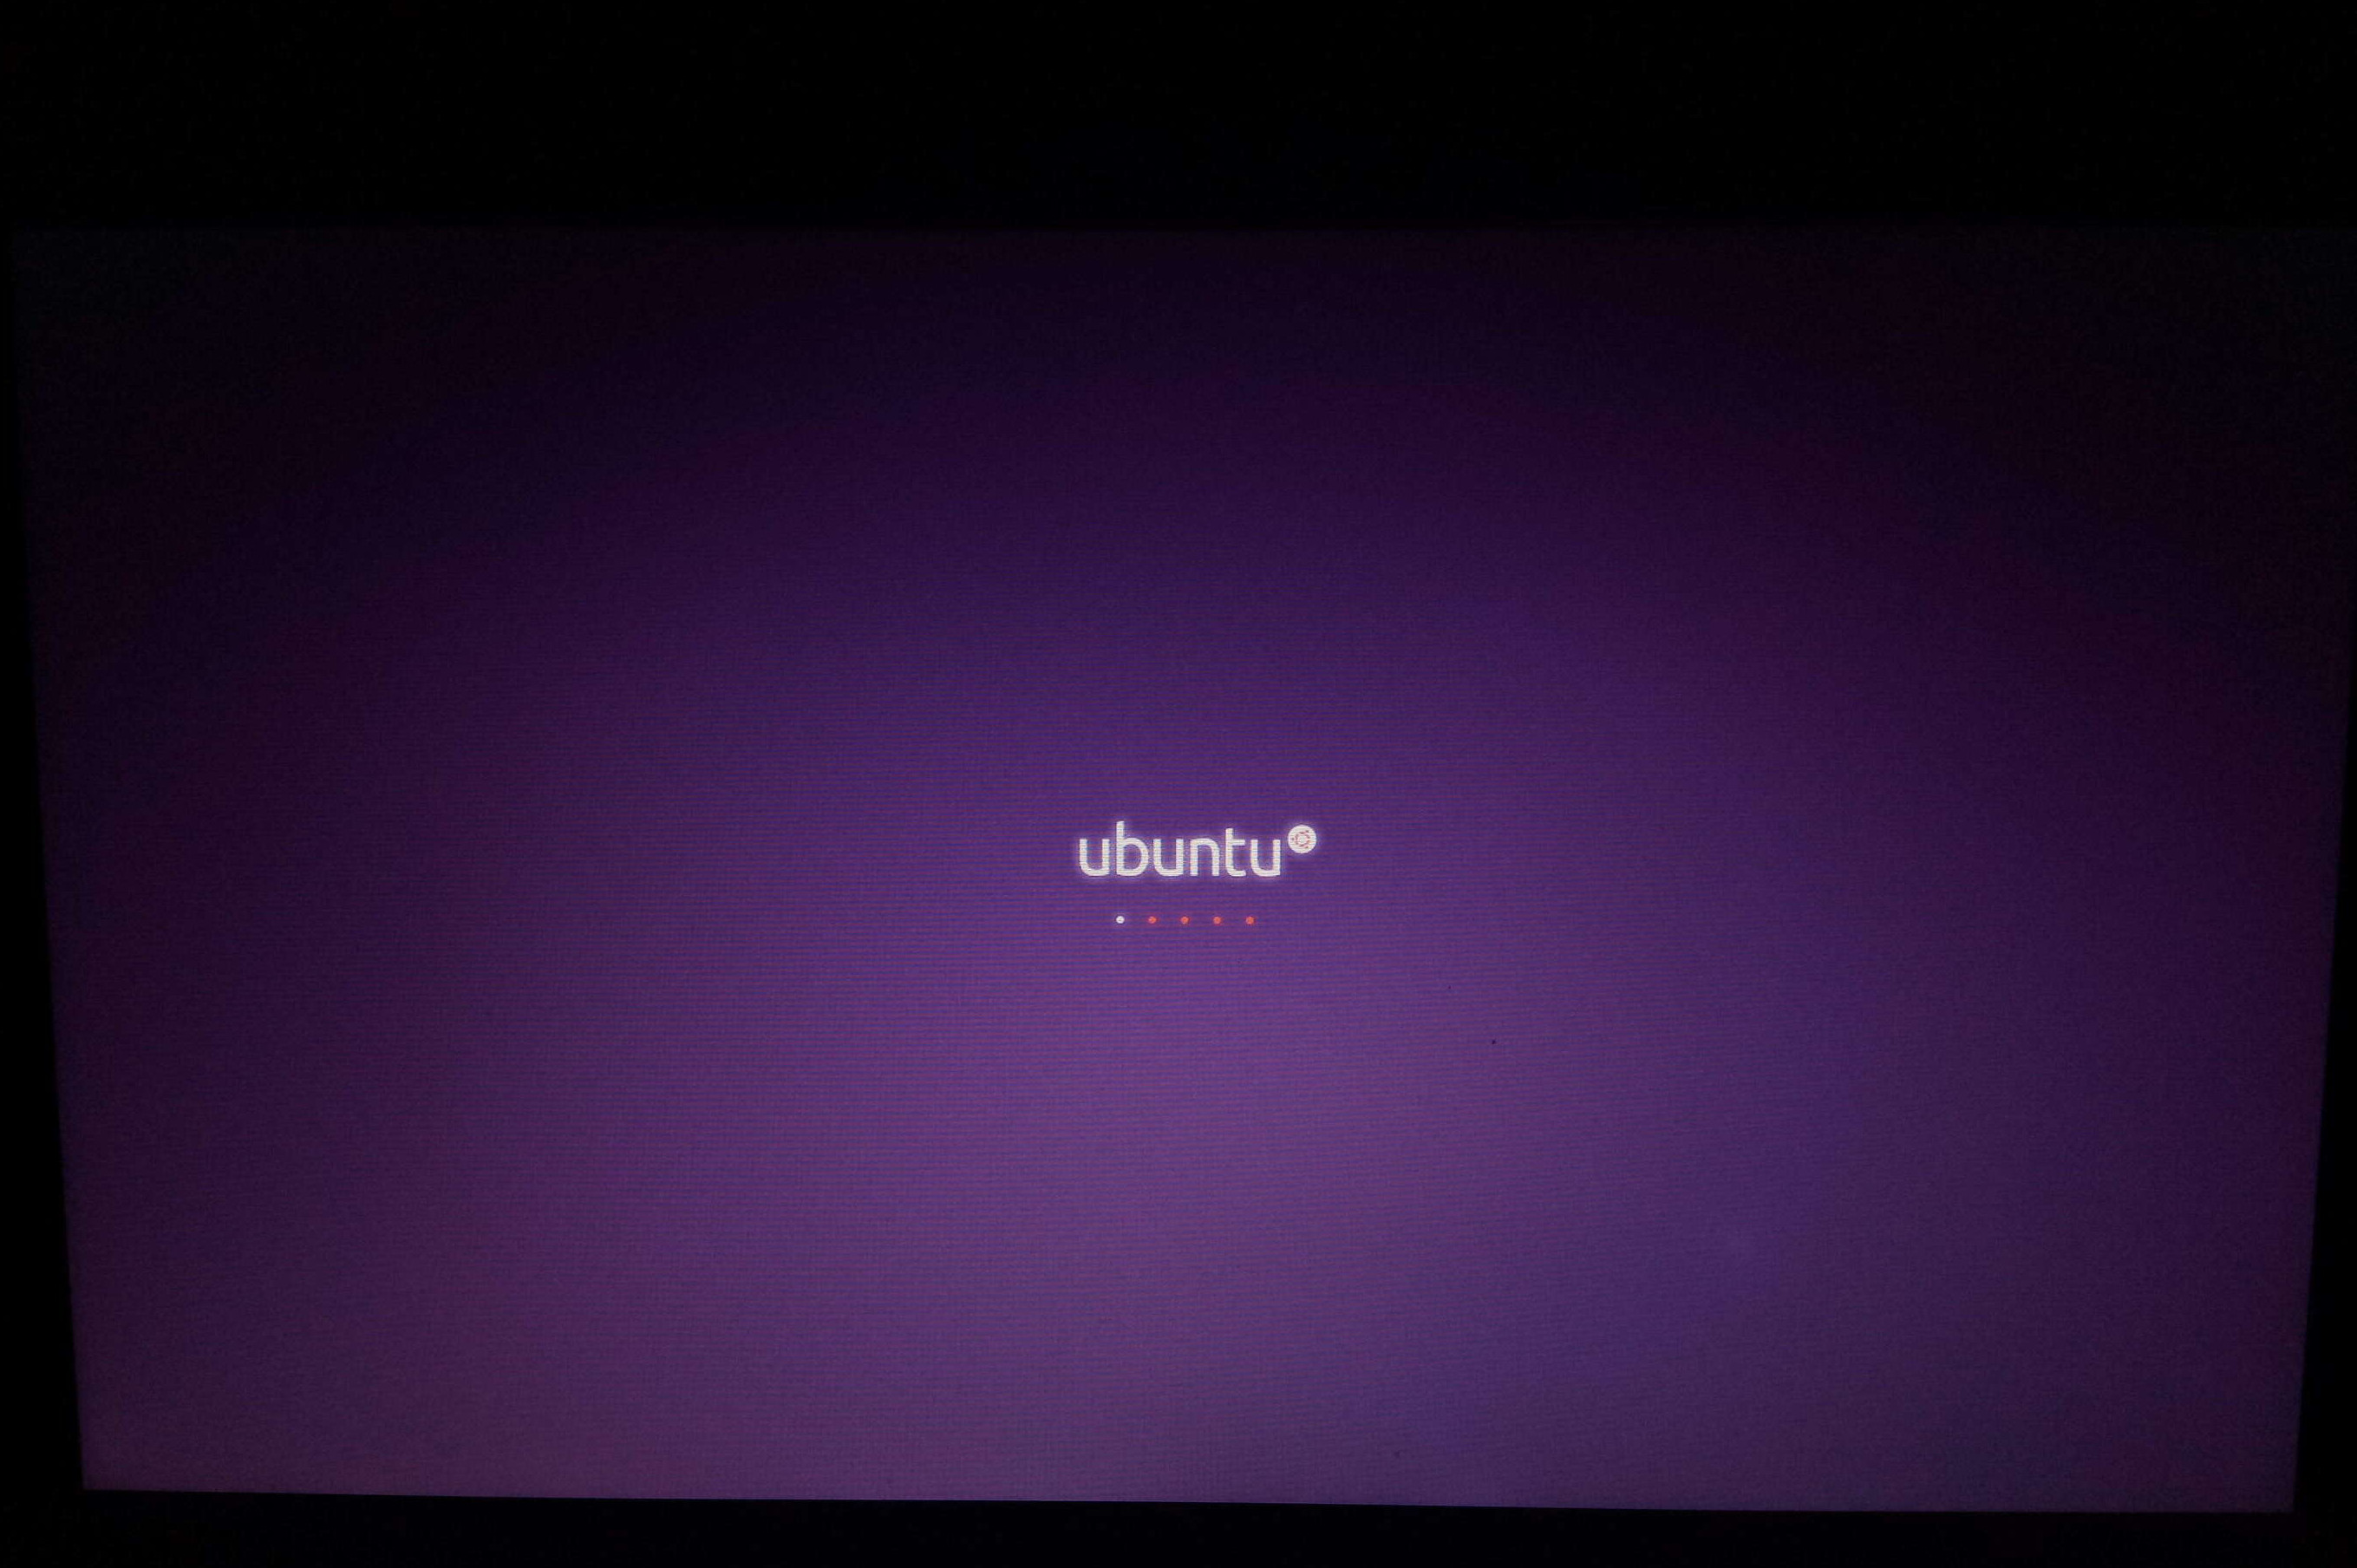 debian-linux-secure-boot-live-ubuntu